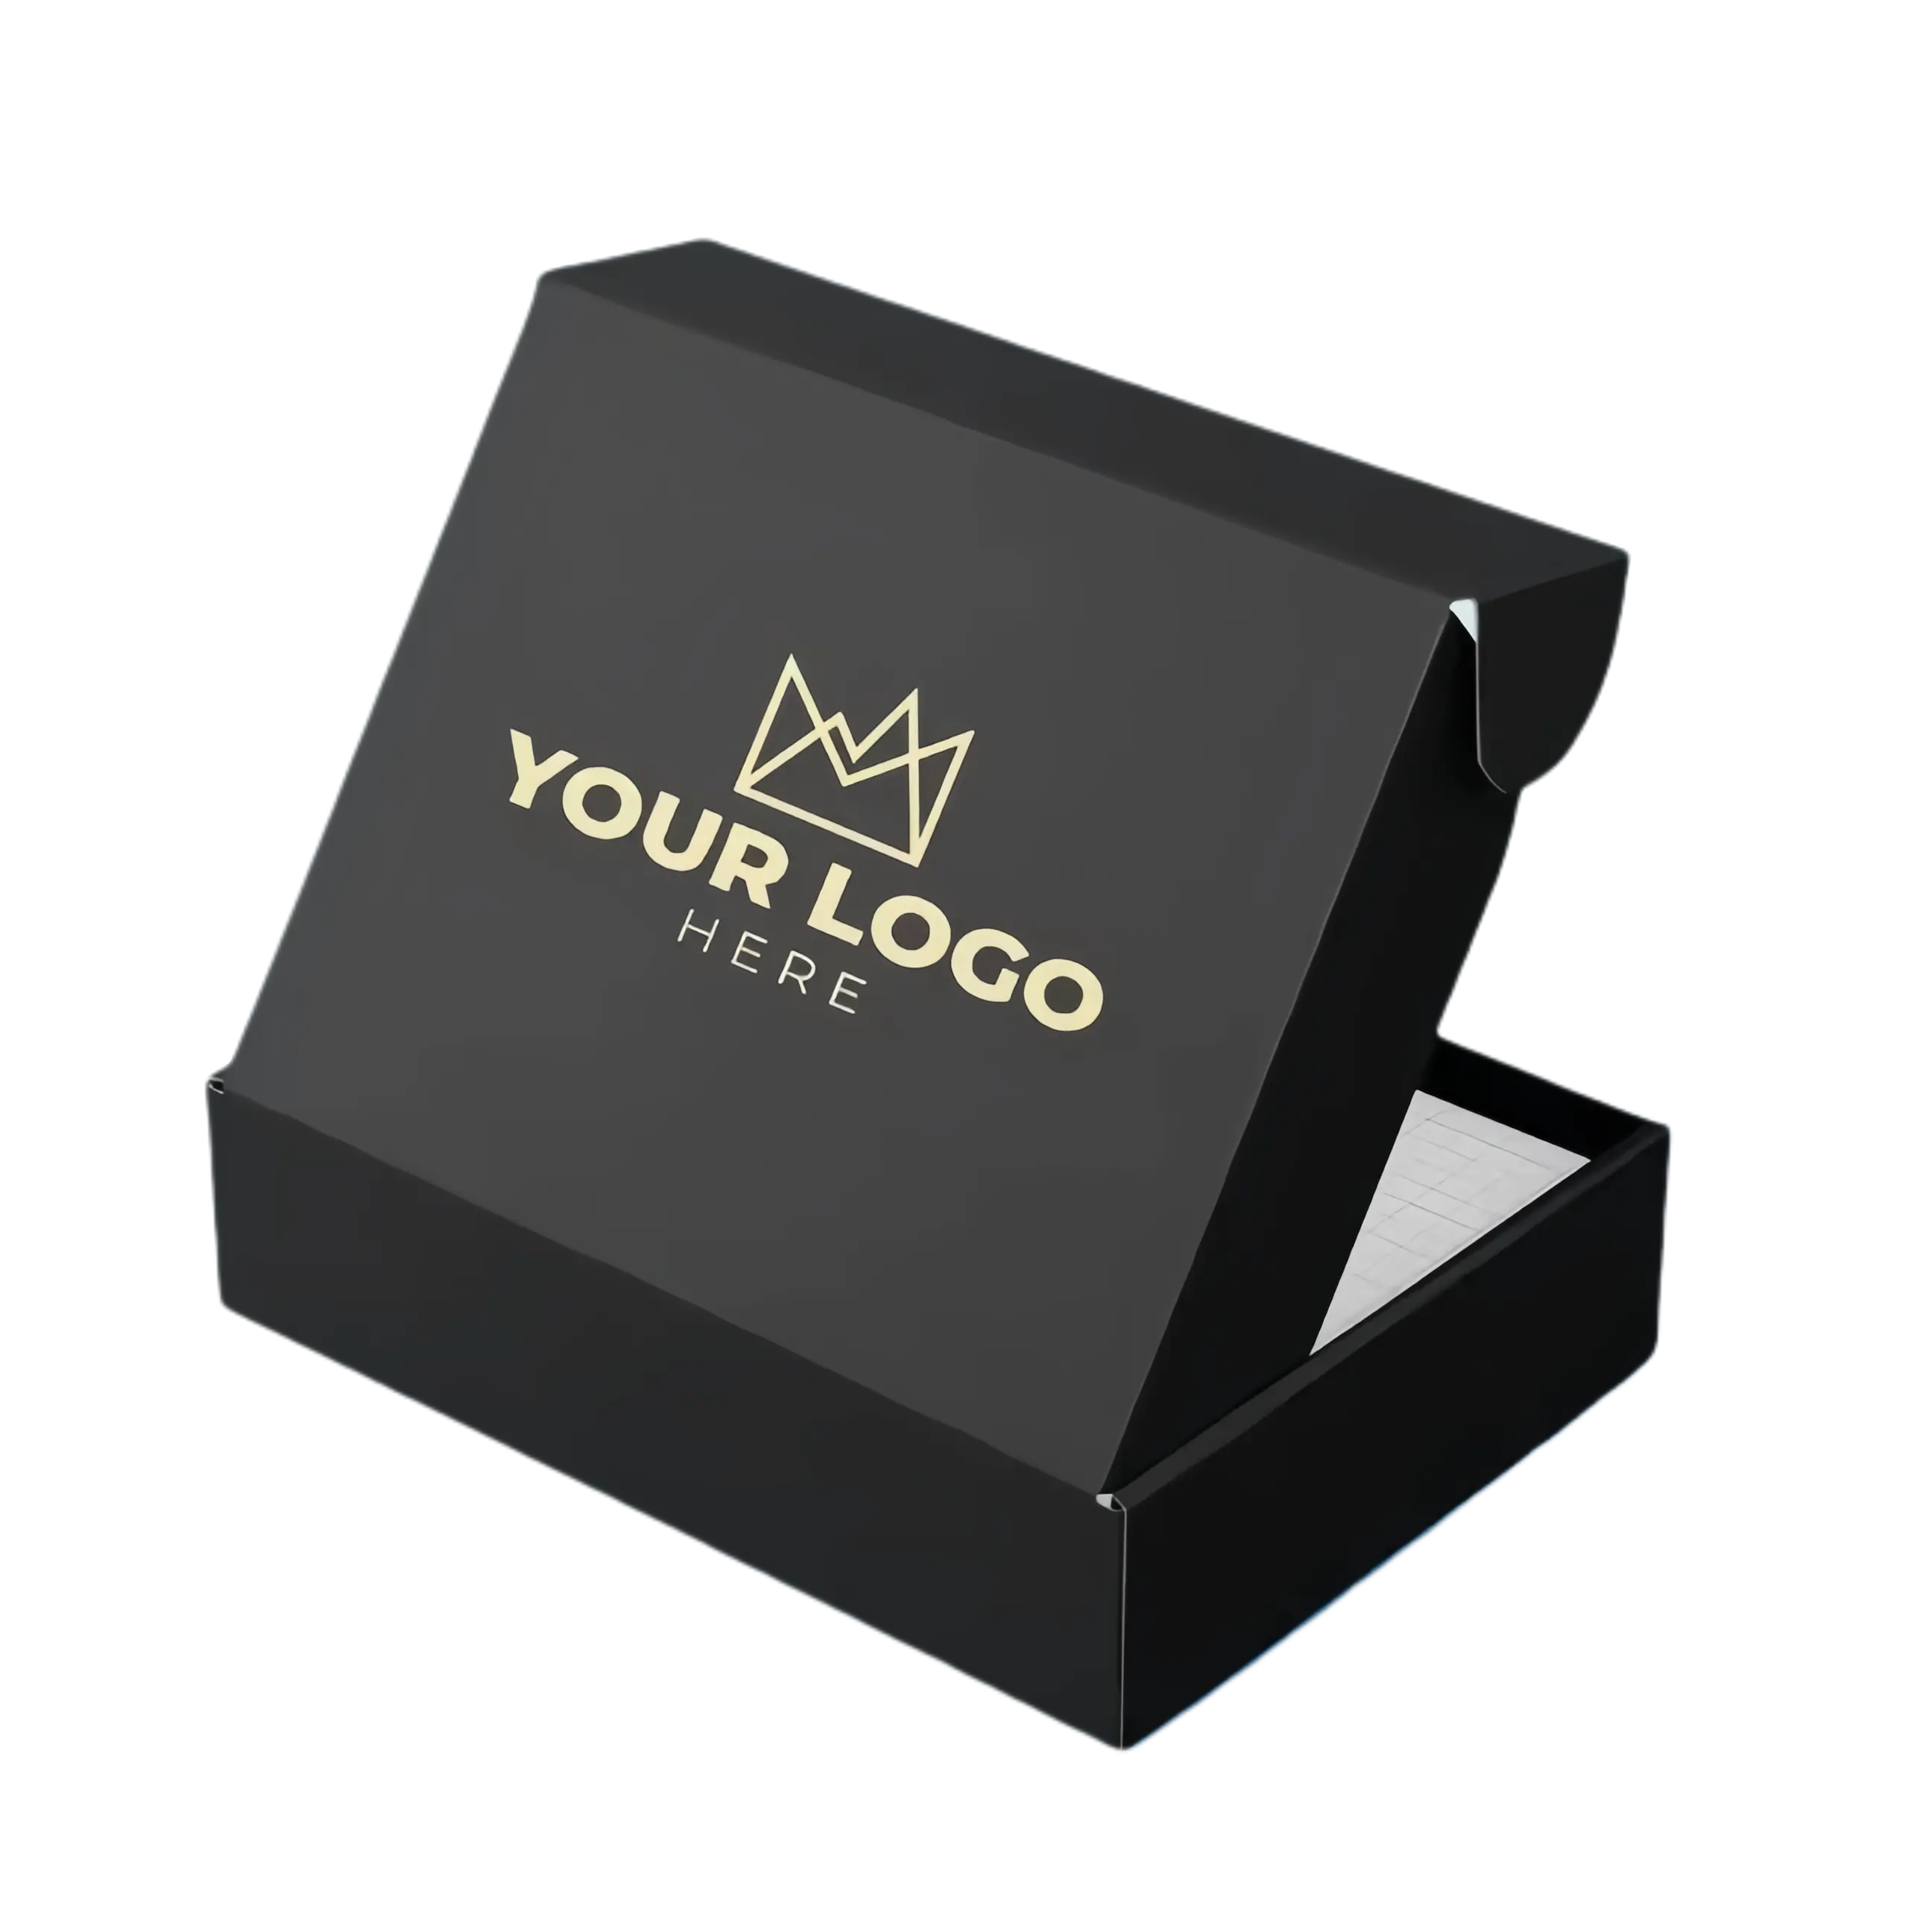 Печатный матовый черный гофрированный картон бумажный упаковочный почтовый ящик с индивидуальным логотипом для малого бизнеса